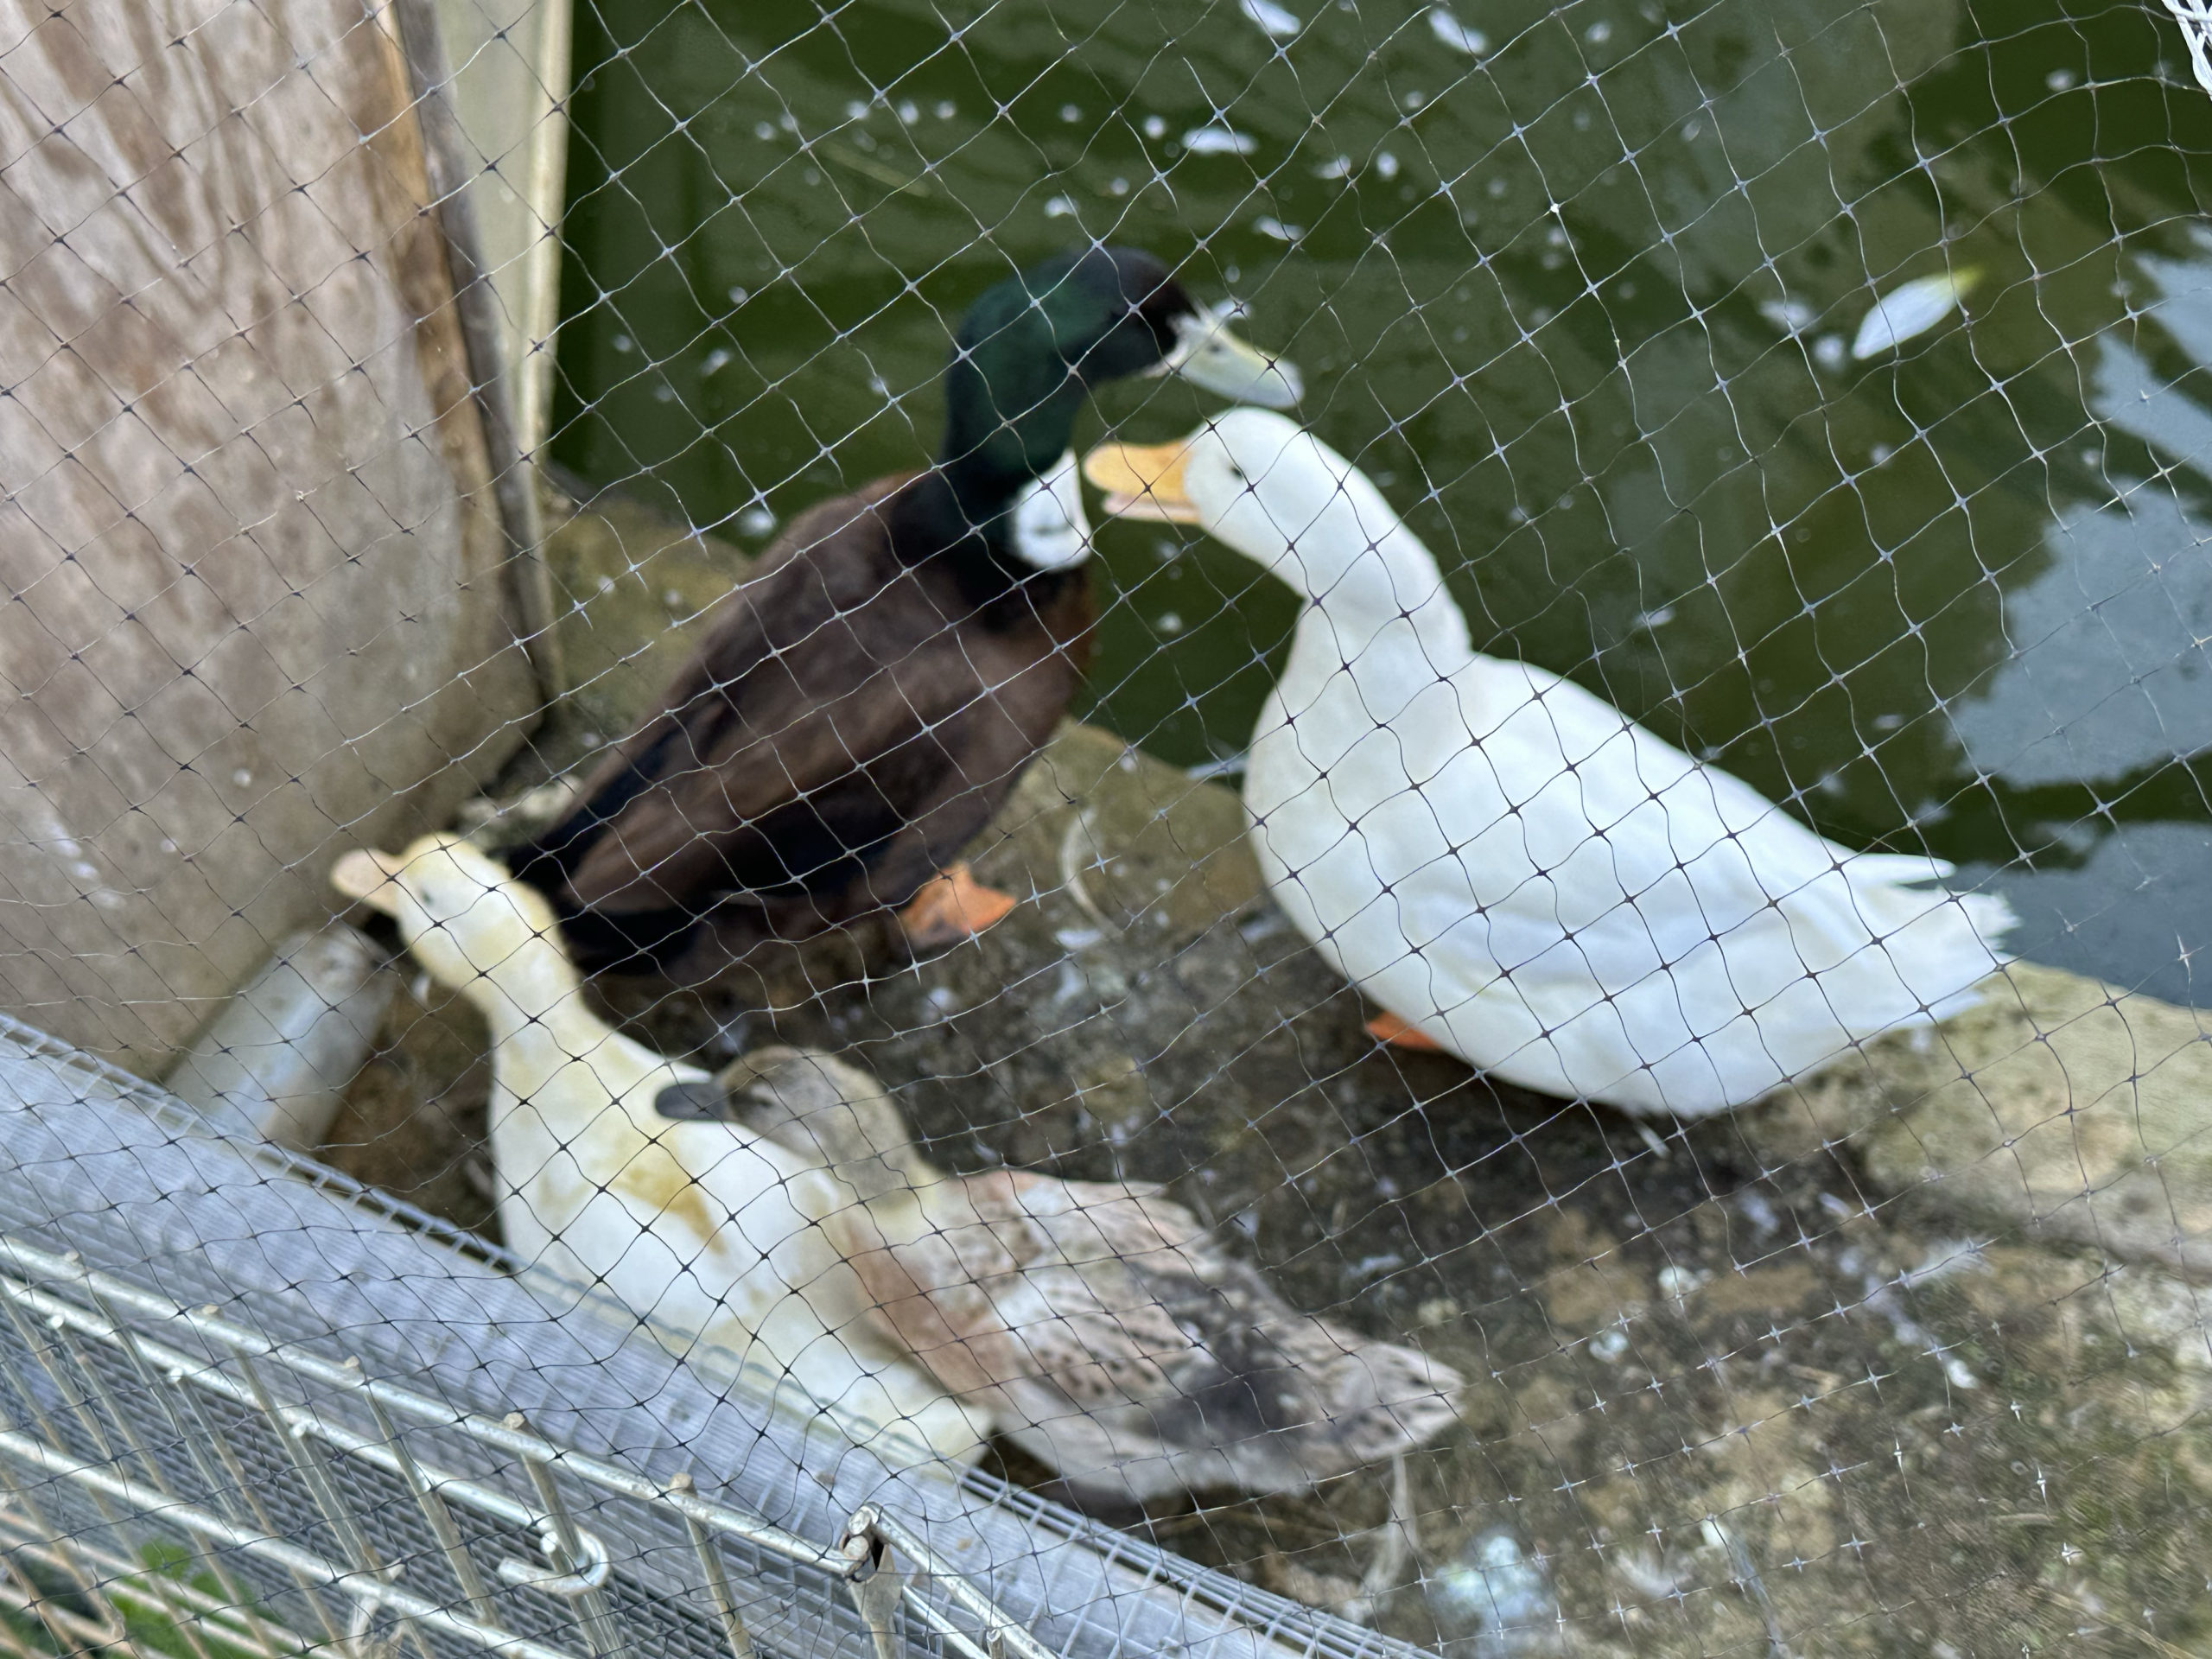 Altogether ducks